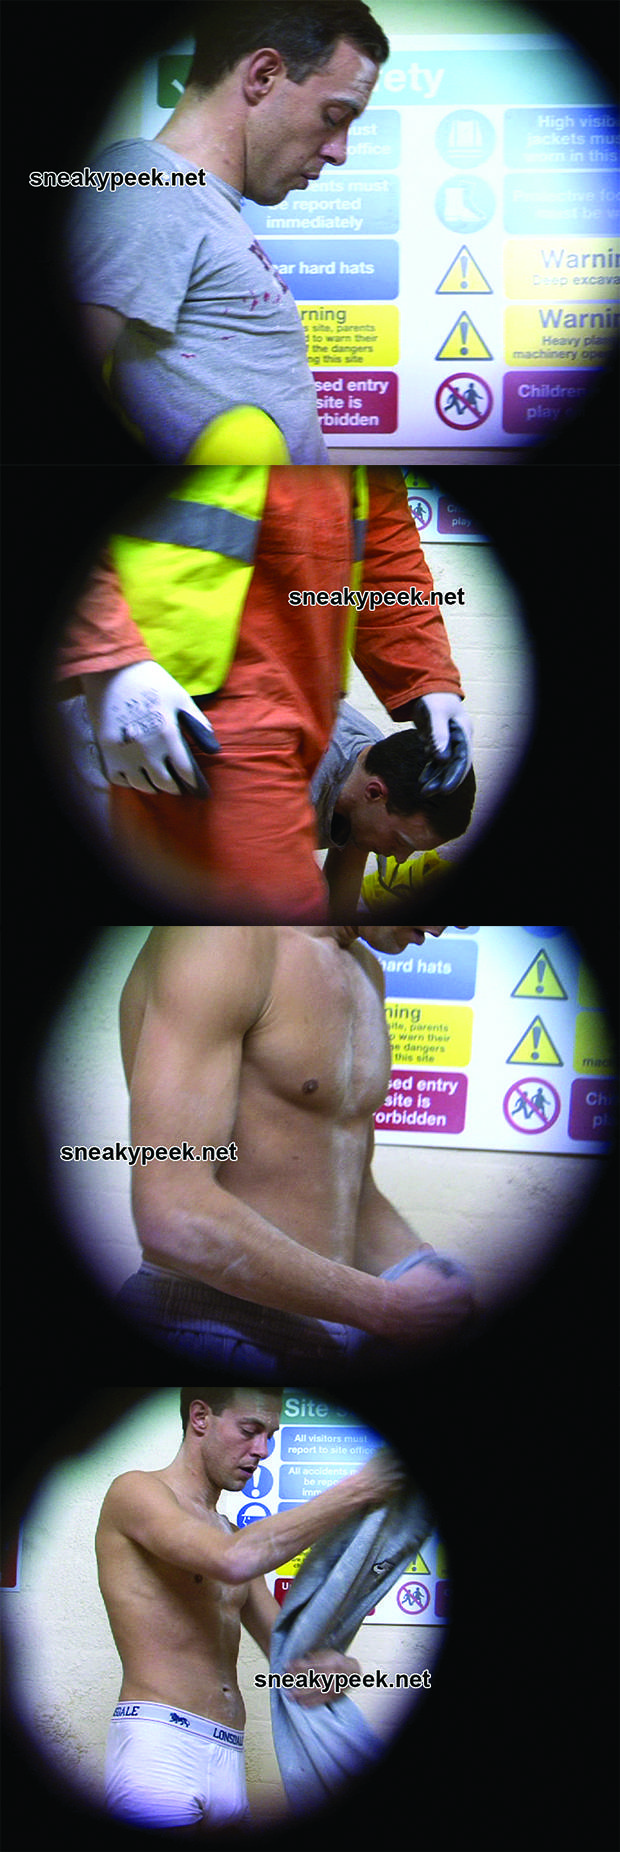 spycam lad caught naked lockerroom